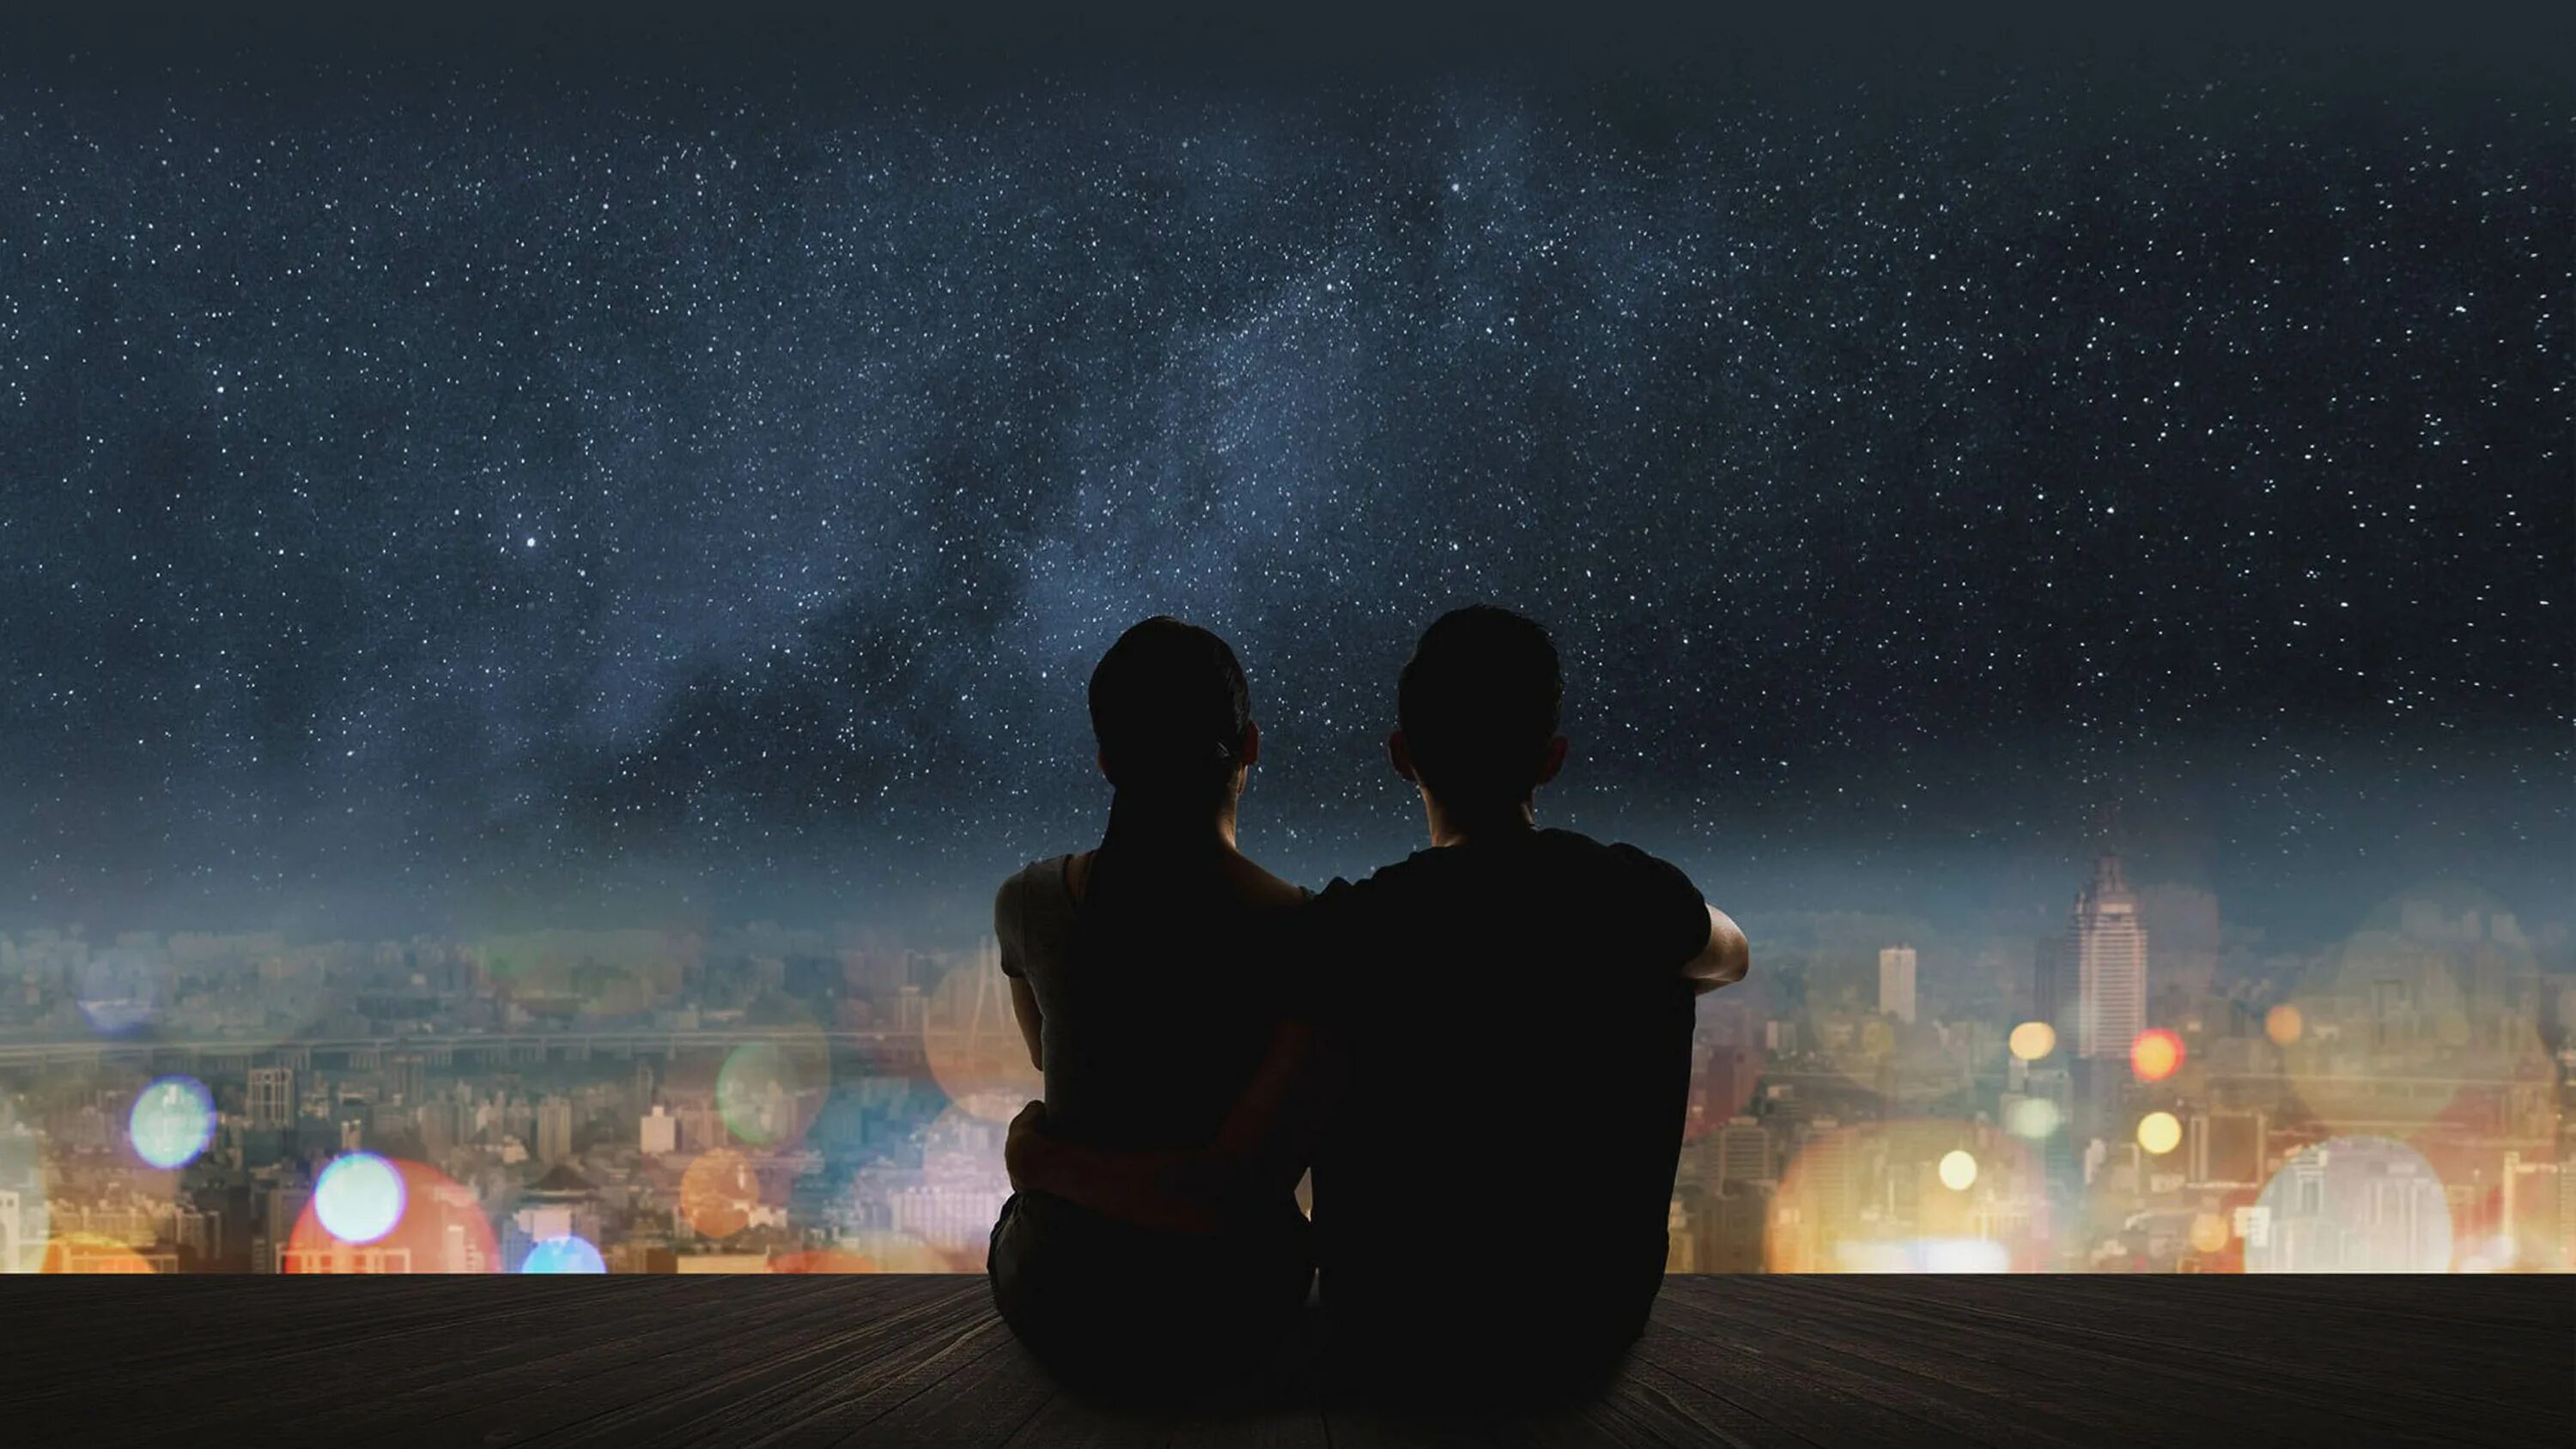 Музыка смотря на звезды. Пара на фоне ночного неба. Звездное небо и влюбленные. Пара на фоне ночи. Пара на фоне звездного неба.